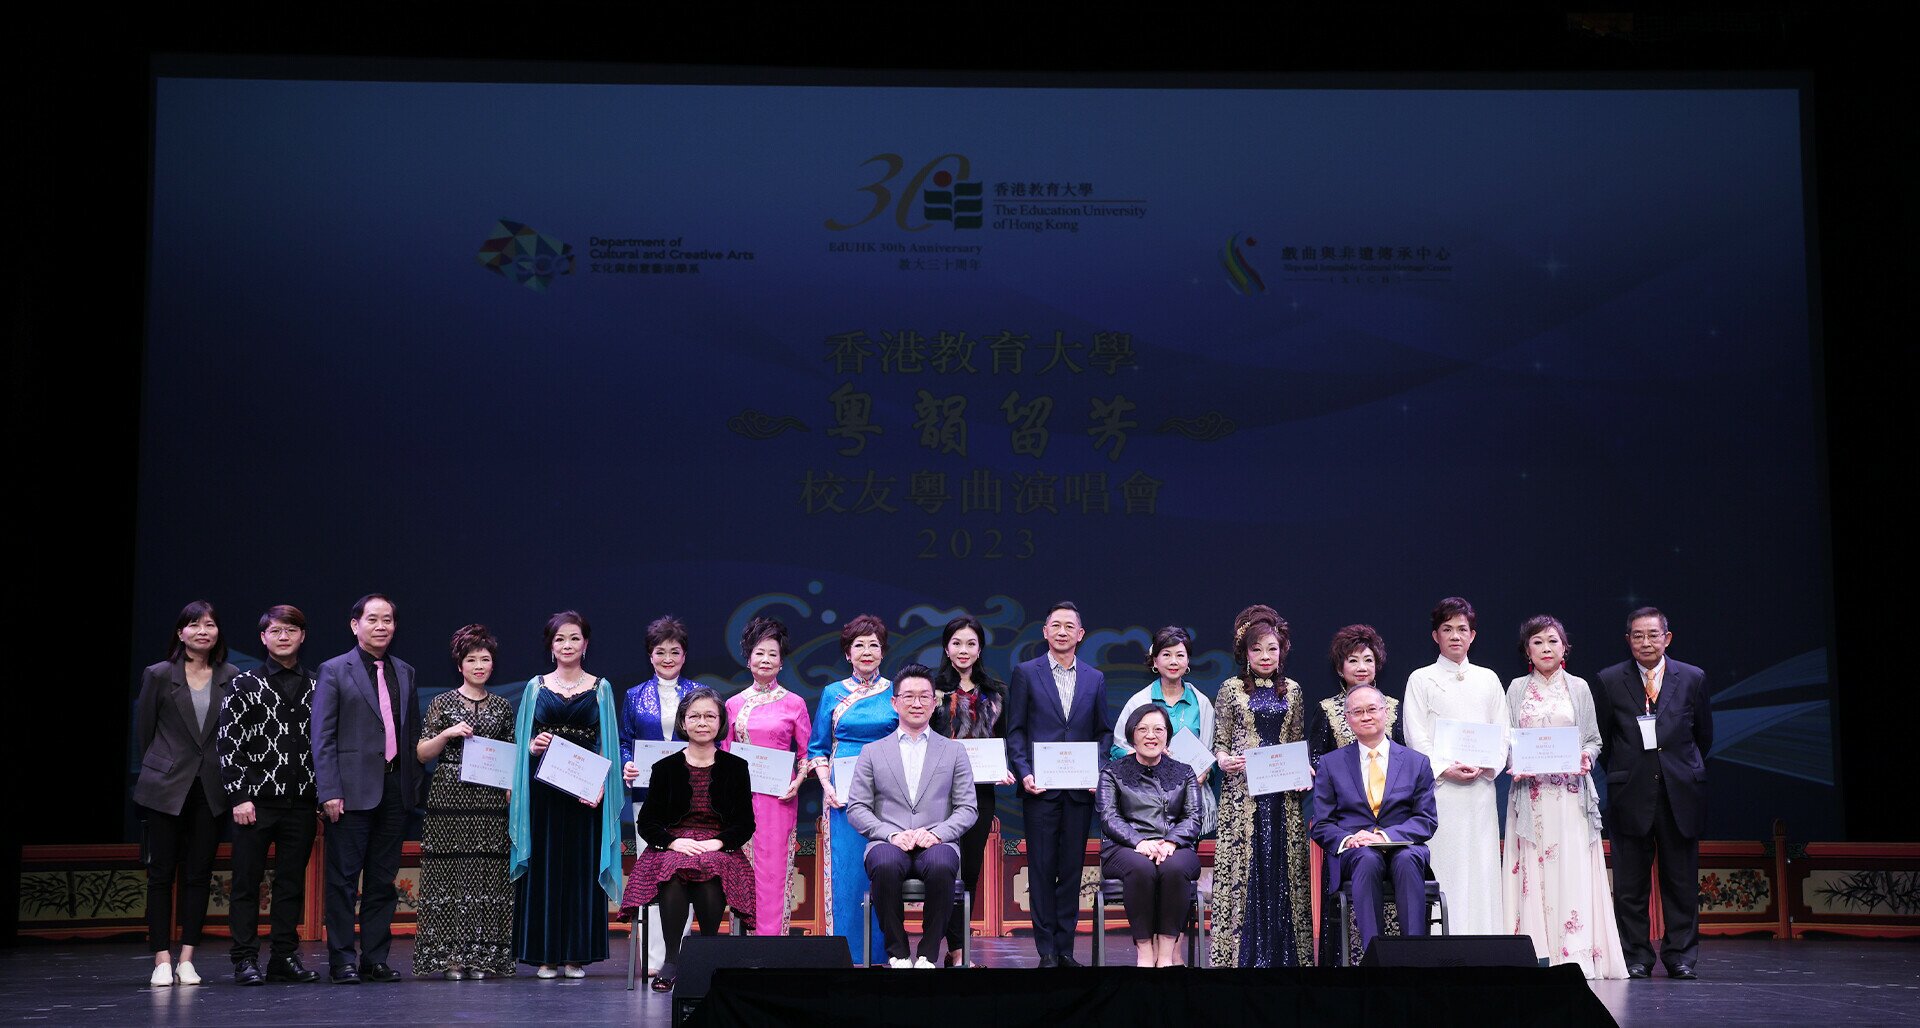 EdUHK Alumni Cantonese Opera Concert